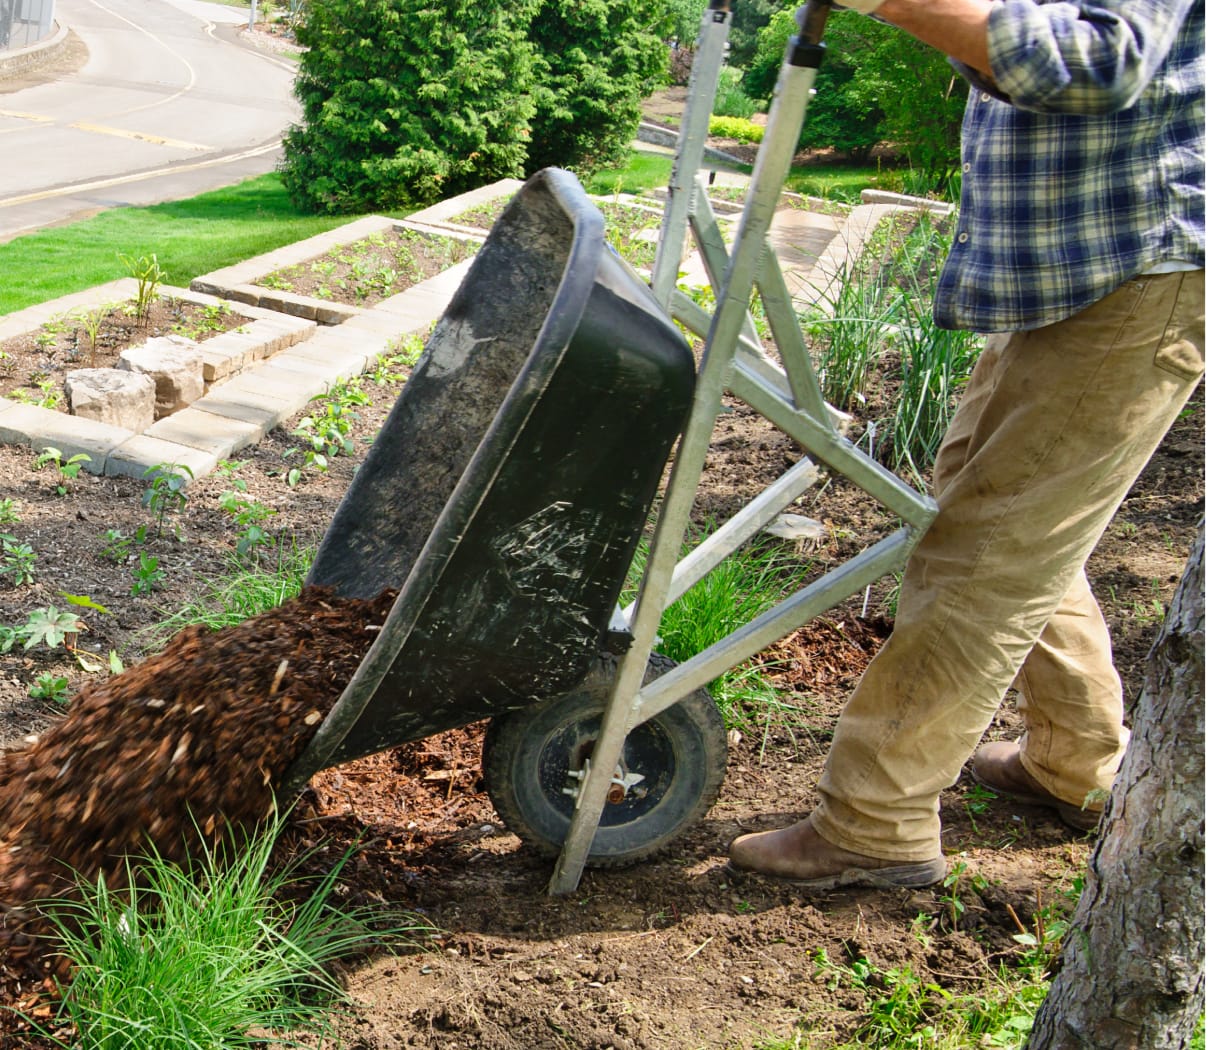 Man dumping soil out of a wheelbarrow into a residential garden bed